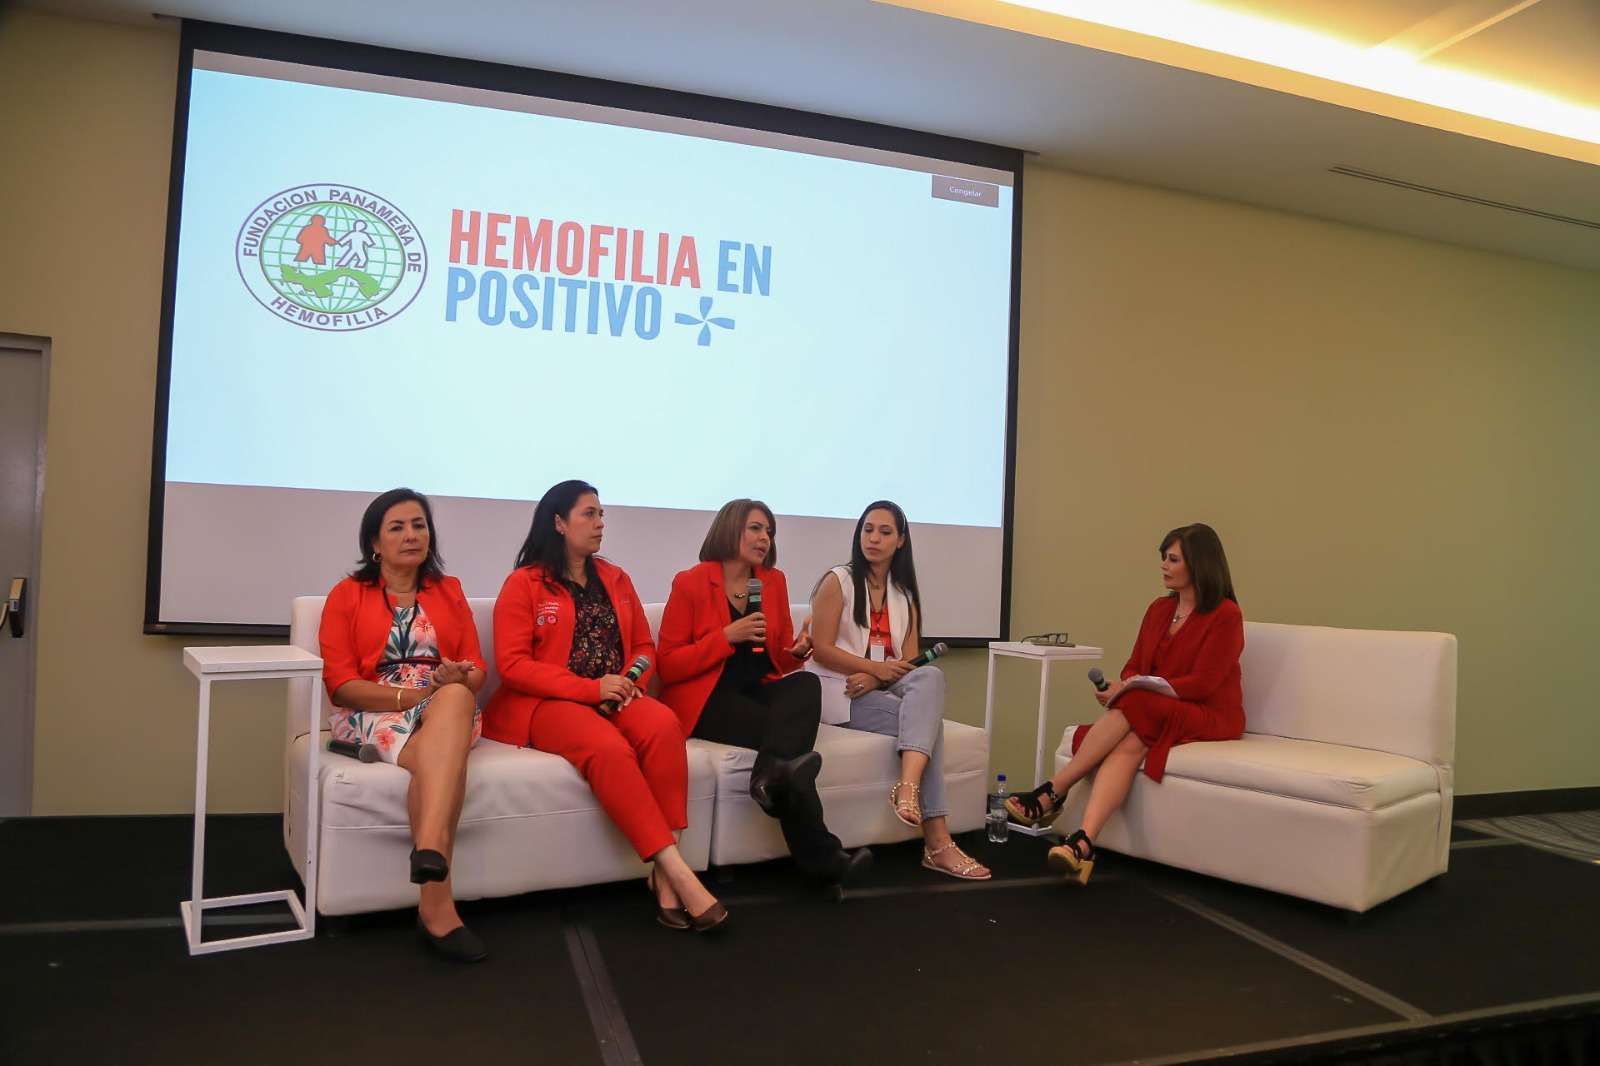 El evento fue presentado por la reconocida periodista internacional, Glenda Umaña, embajadora de Hemofilia en Positivo